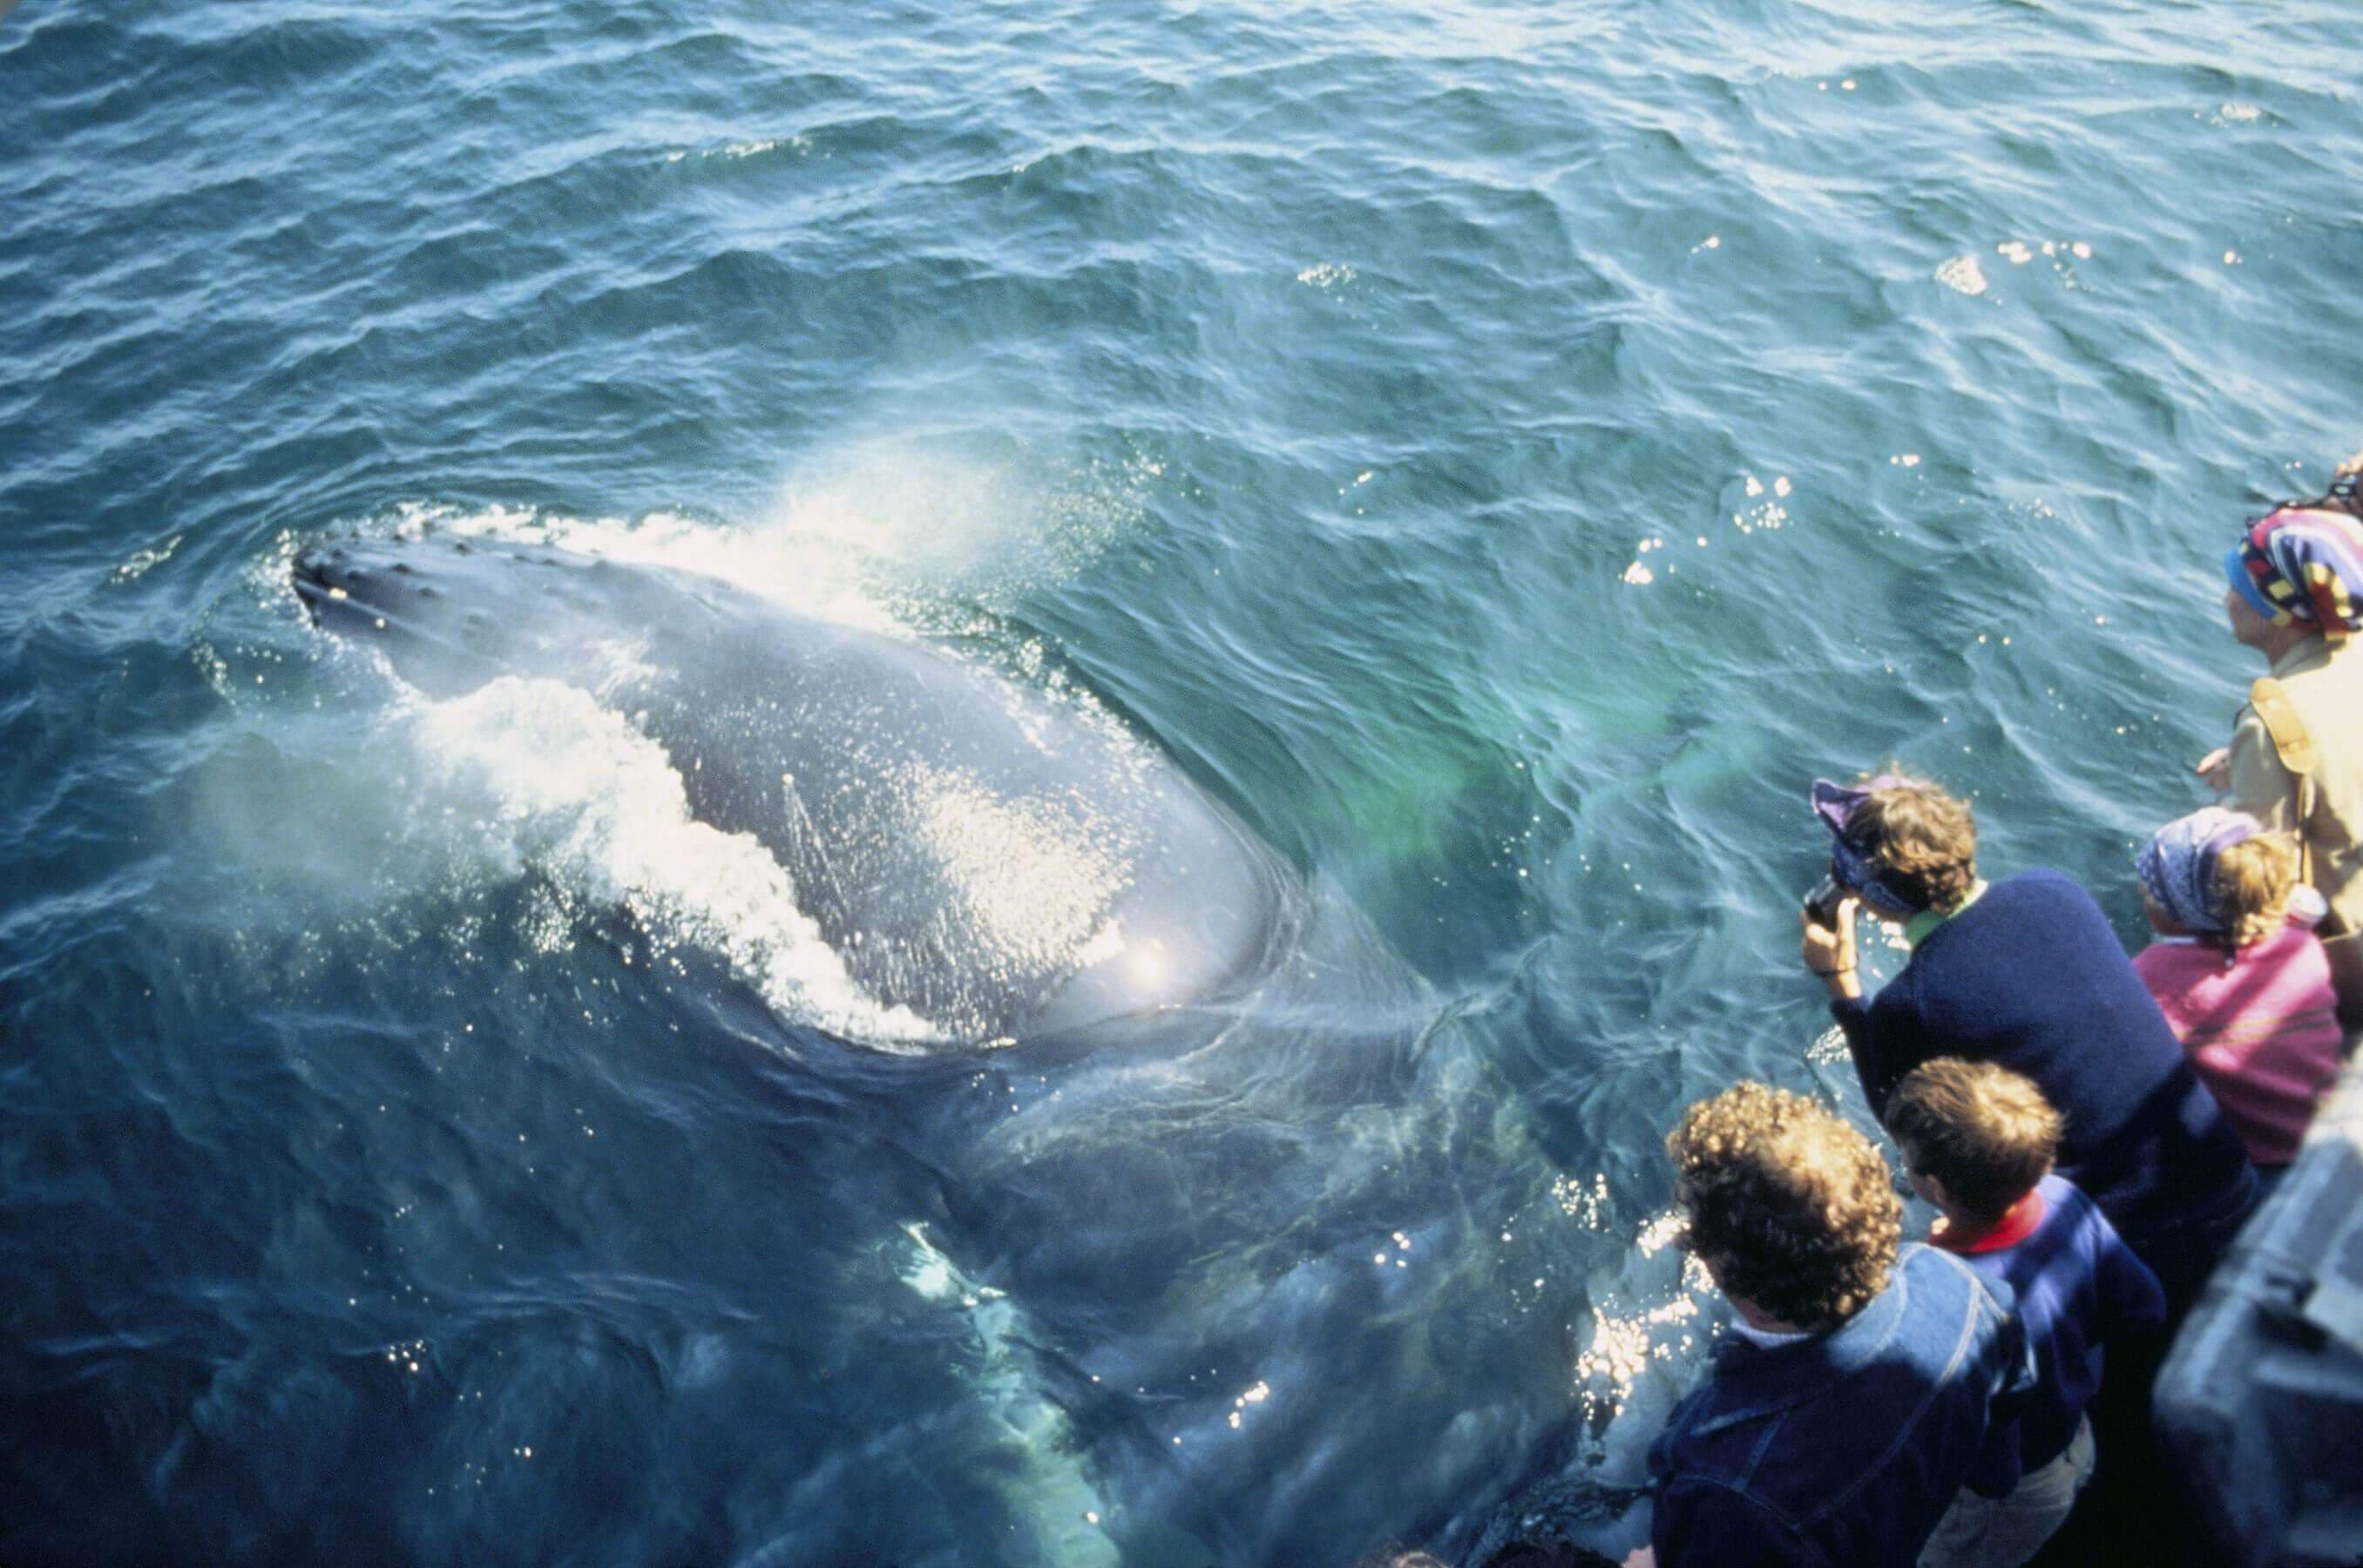 Los turistas ven ballenas azules en el tour de avistamiento de ballenas en Trincomalee Sri Lanka